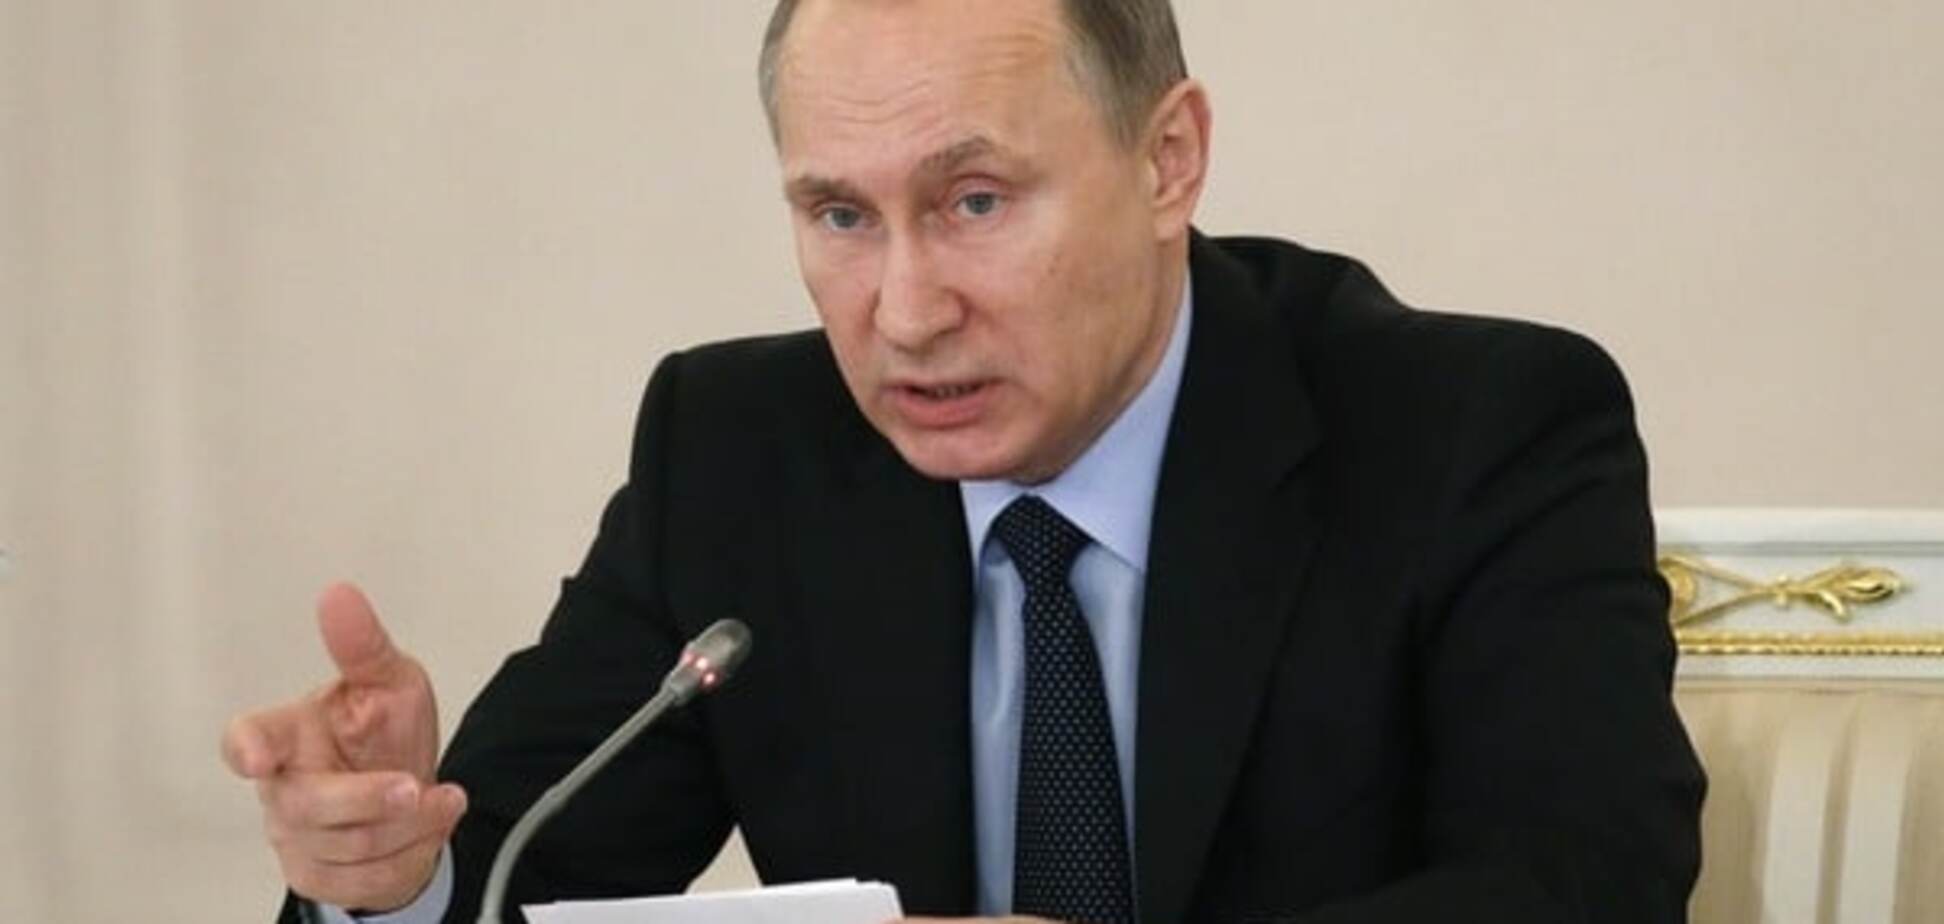 'Чикатило с ядерным чемоданом': Сотник заявил, что Путин слетел с катушек